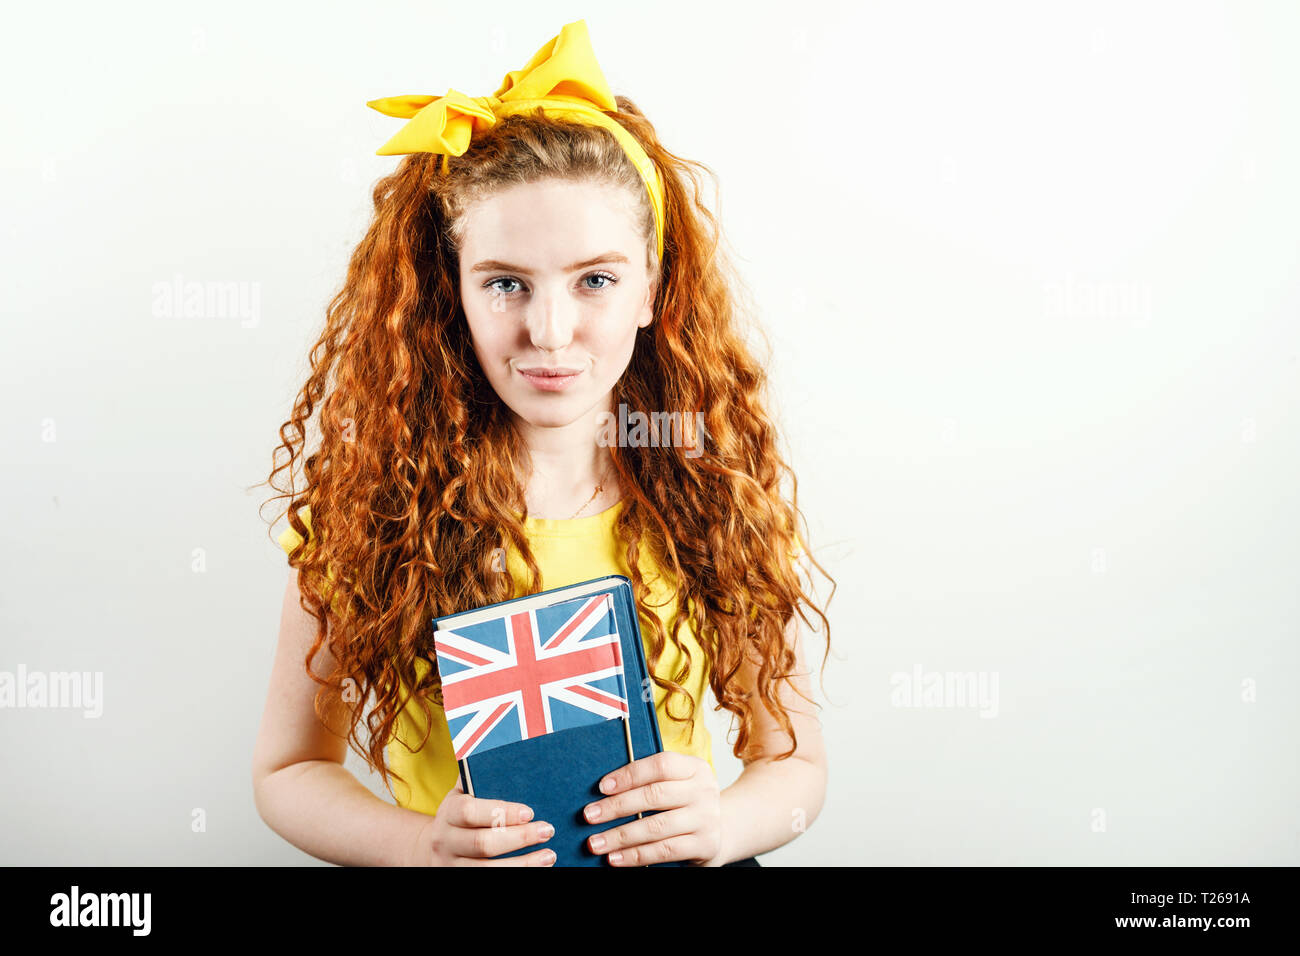 Fille rousse bouclée avec un arc jaune sur sa tête portant des T-shirt jaune holding book et drapeau britannique, debout sur le fond blanc Banque D'Images